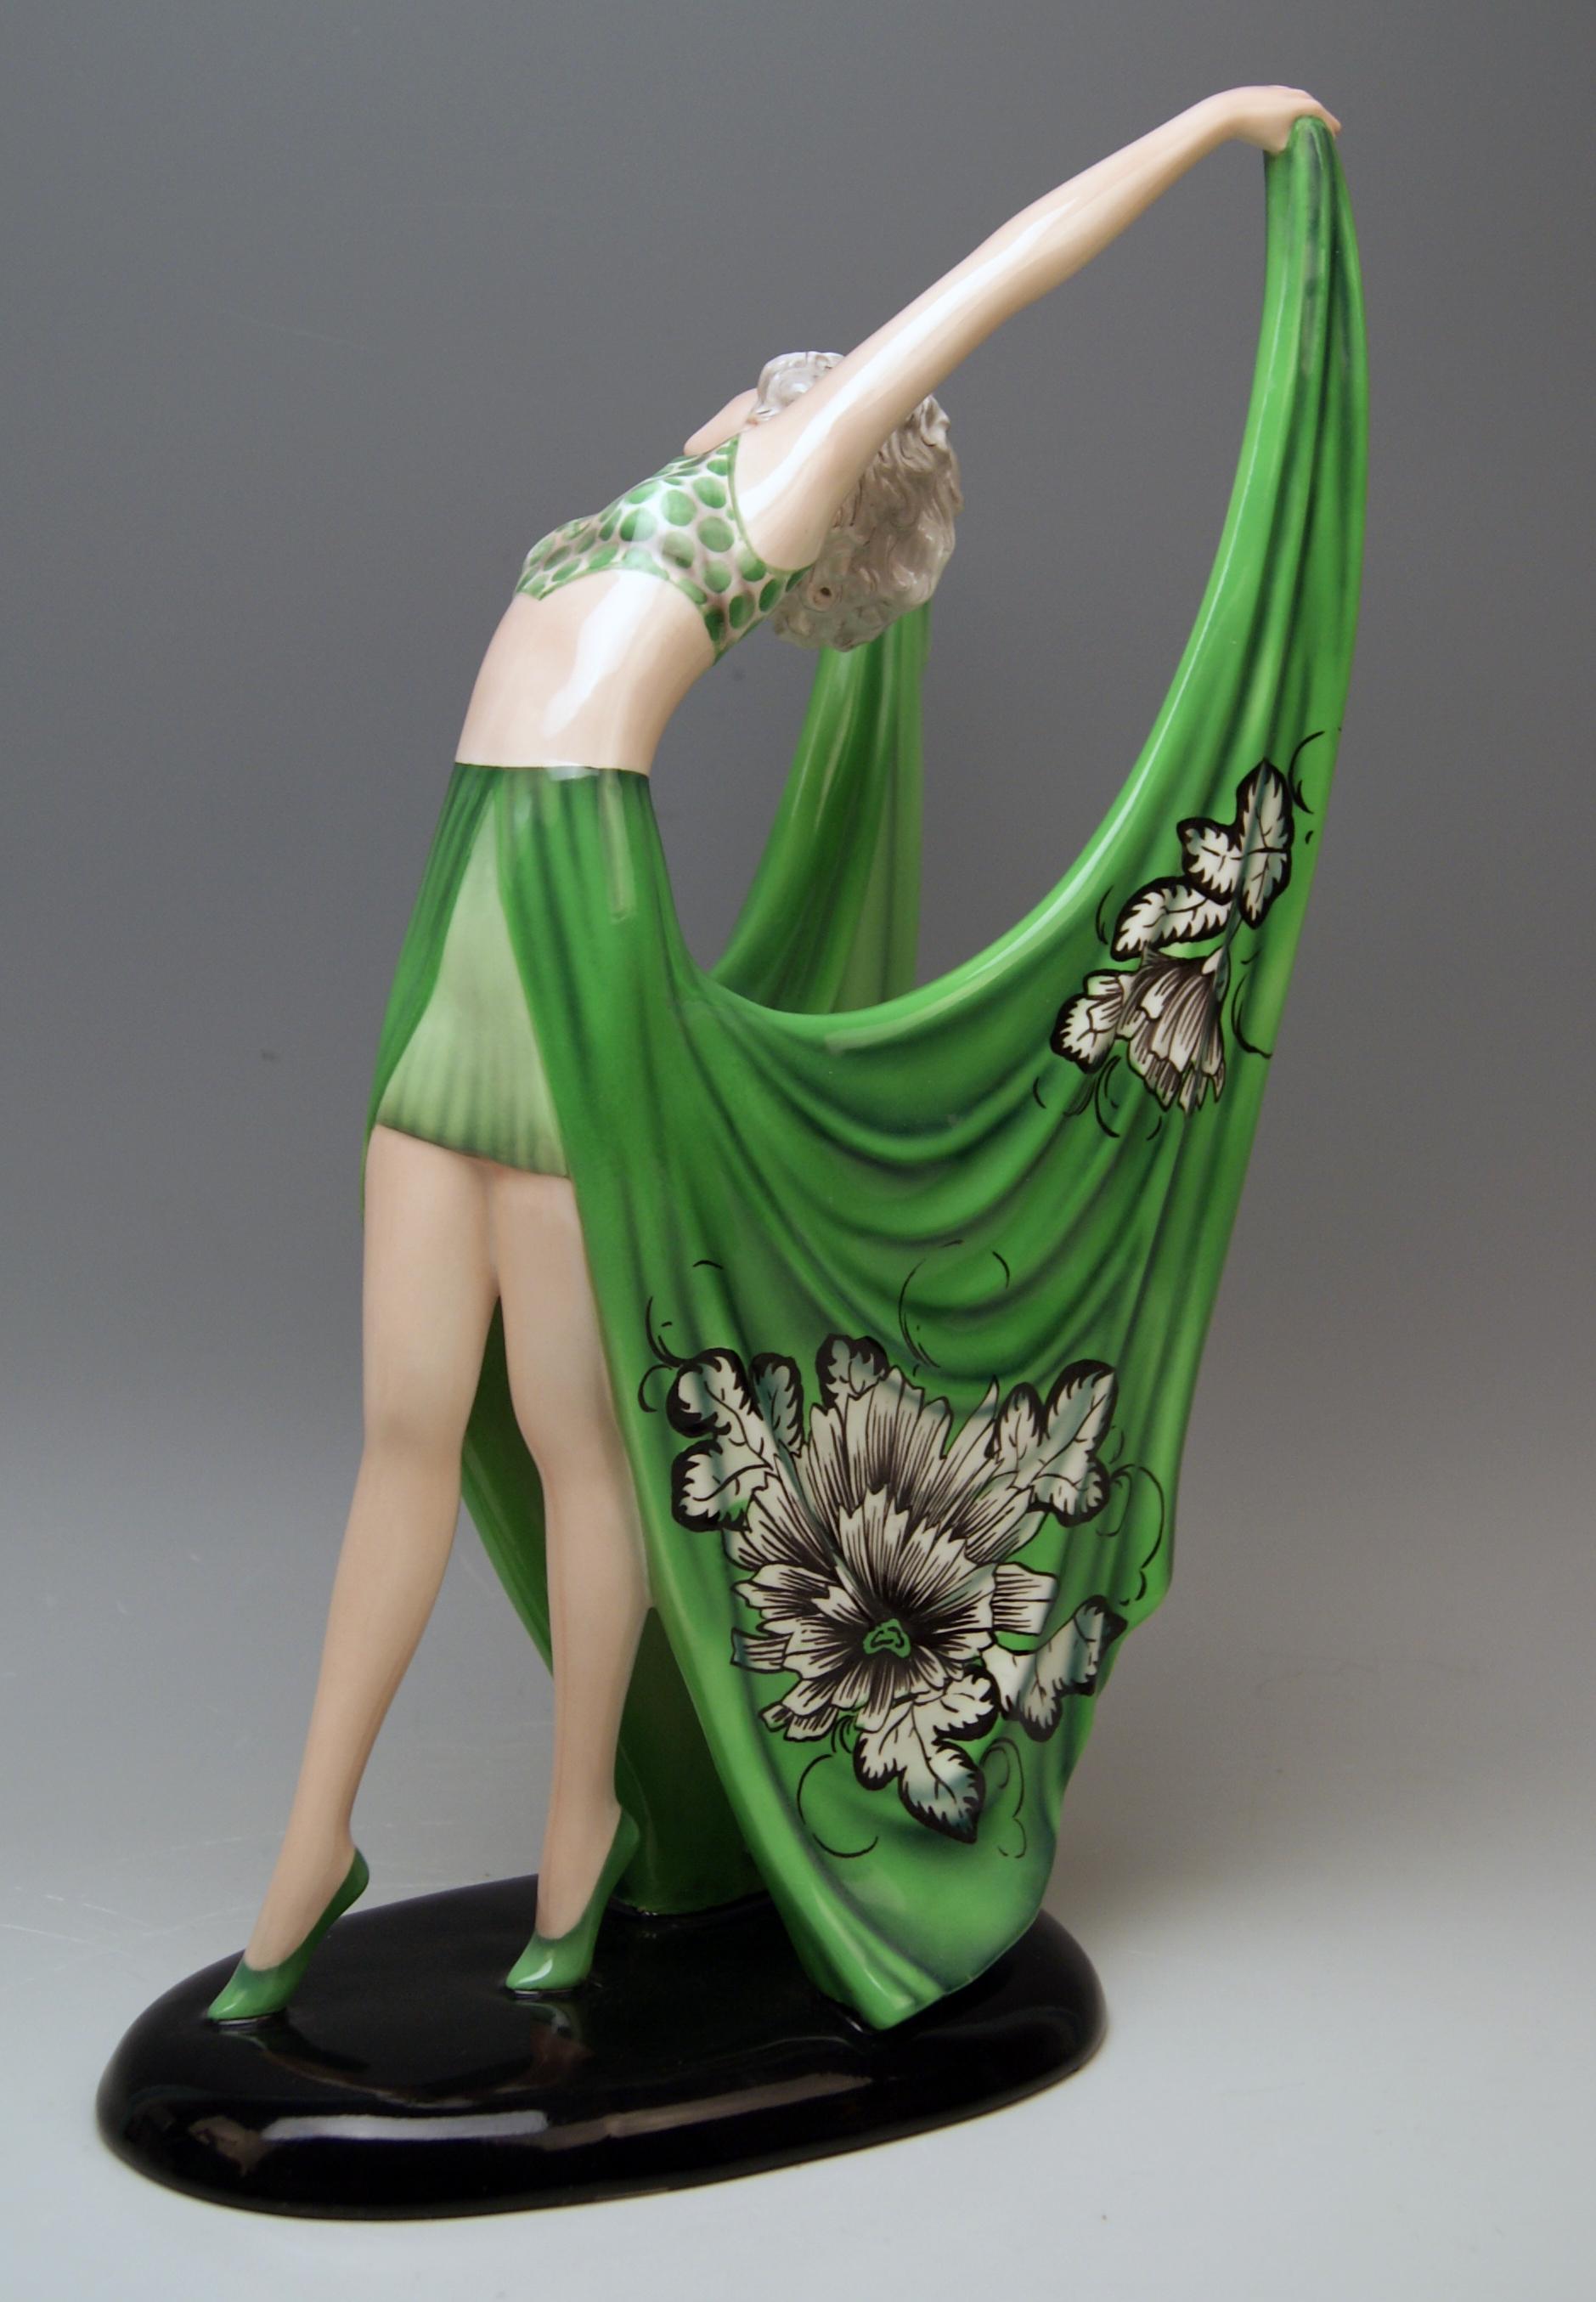 Goldscheider Vienna dancing lady clad in green dress

Designed by Stefan (= Stephen) Dakon (1904-1992), circa 1935 / made 1935-1936. 
model number 7195 / 1336 / 4

Hallmarked:
Goldscheider WIEN (= VIENNA) stamp mark
Made in Austria /